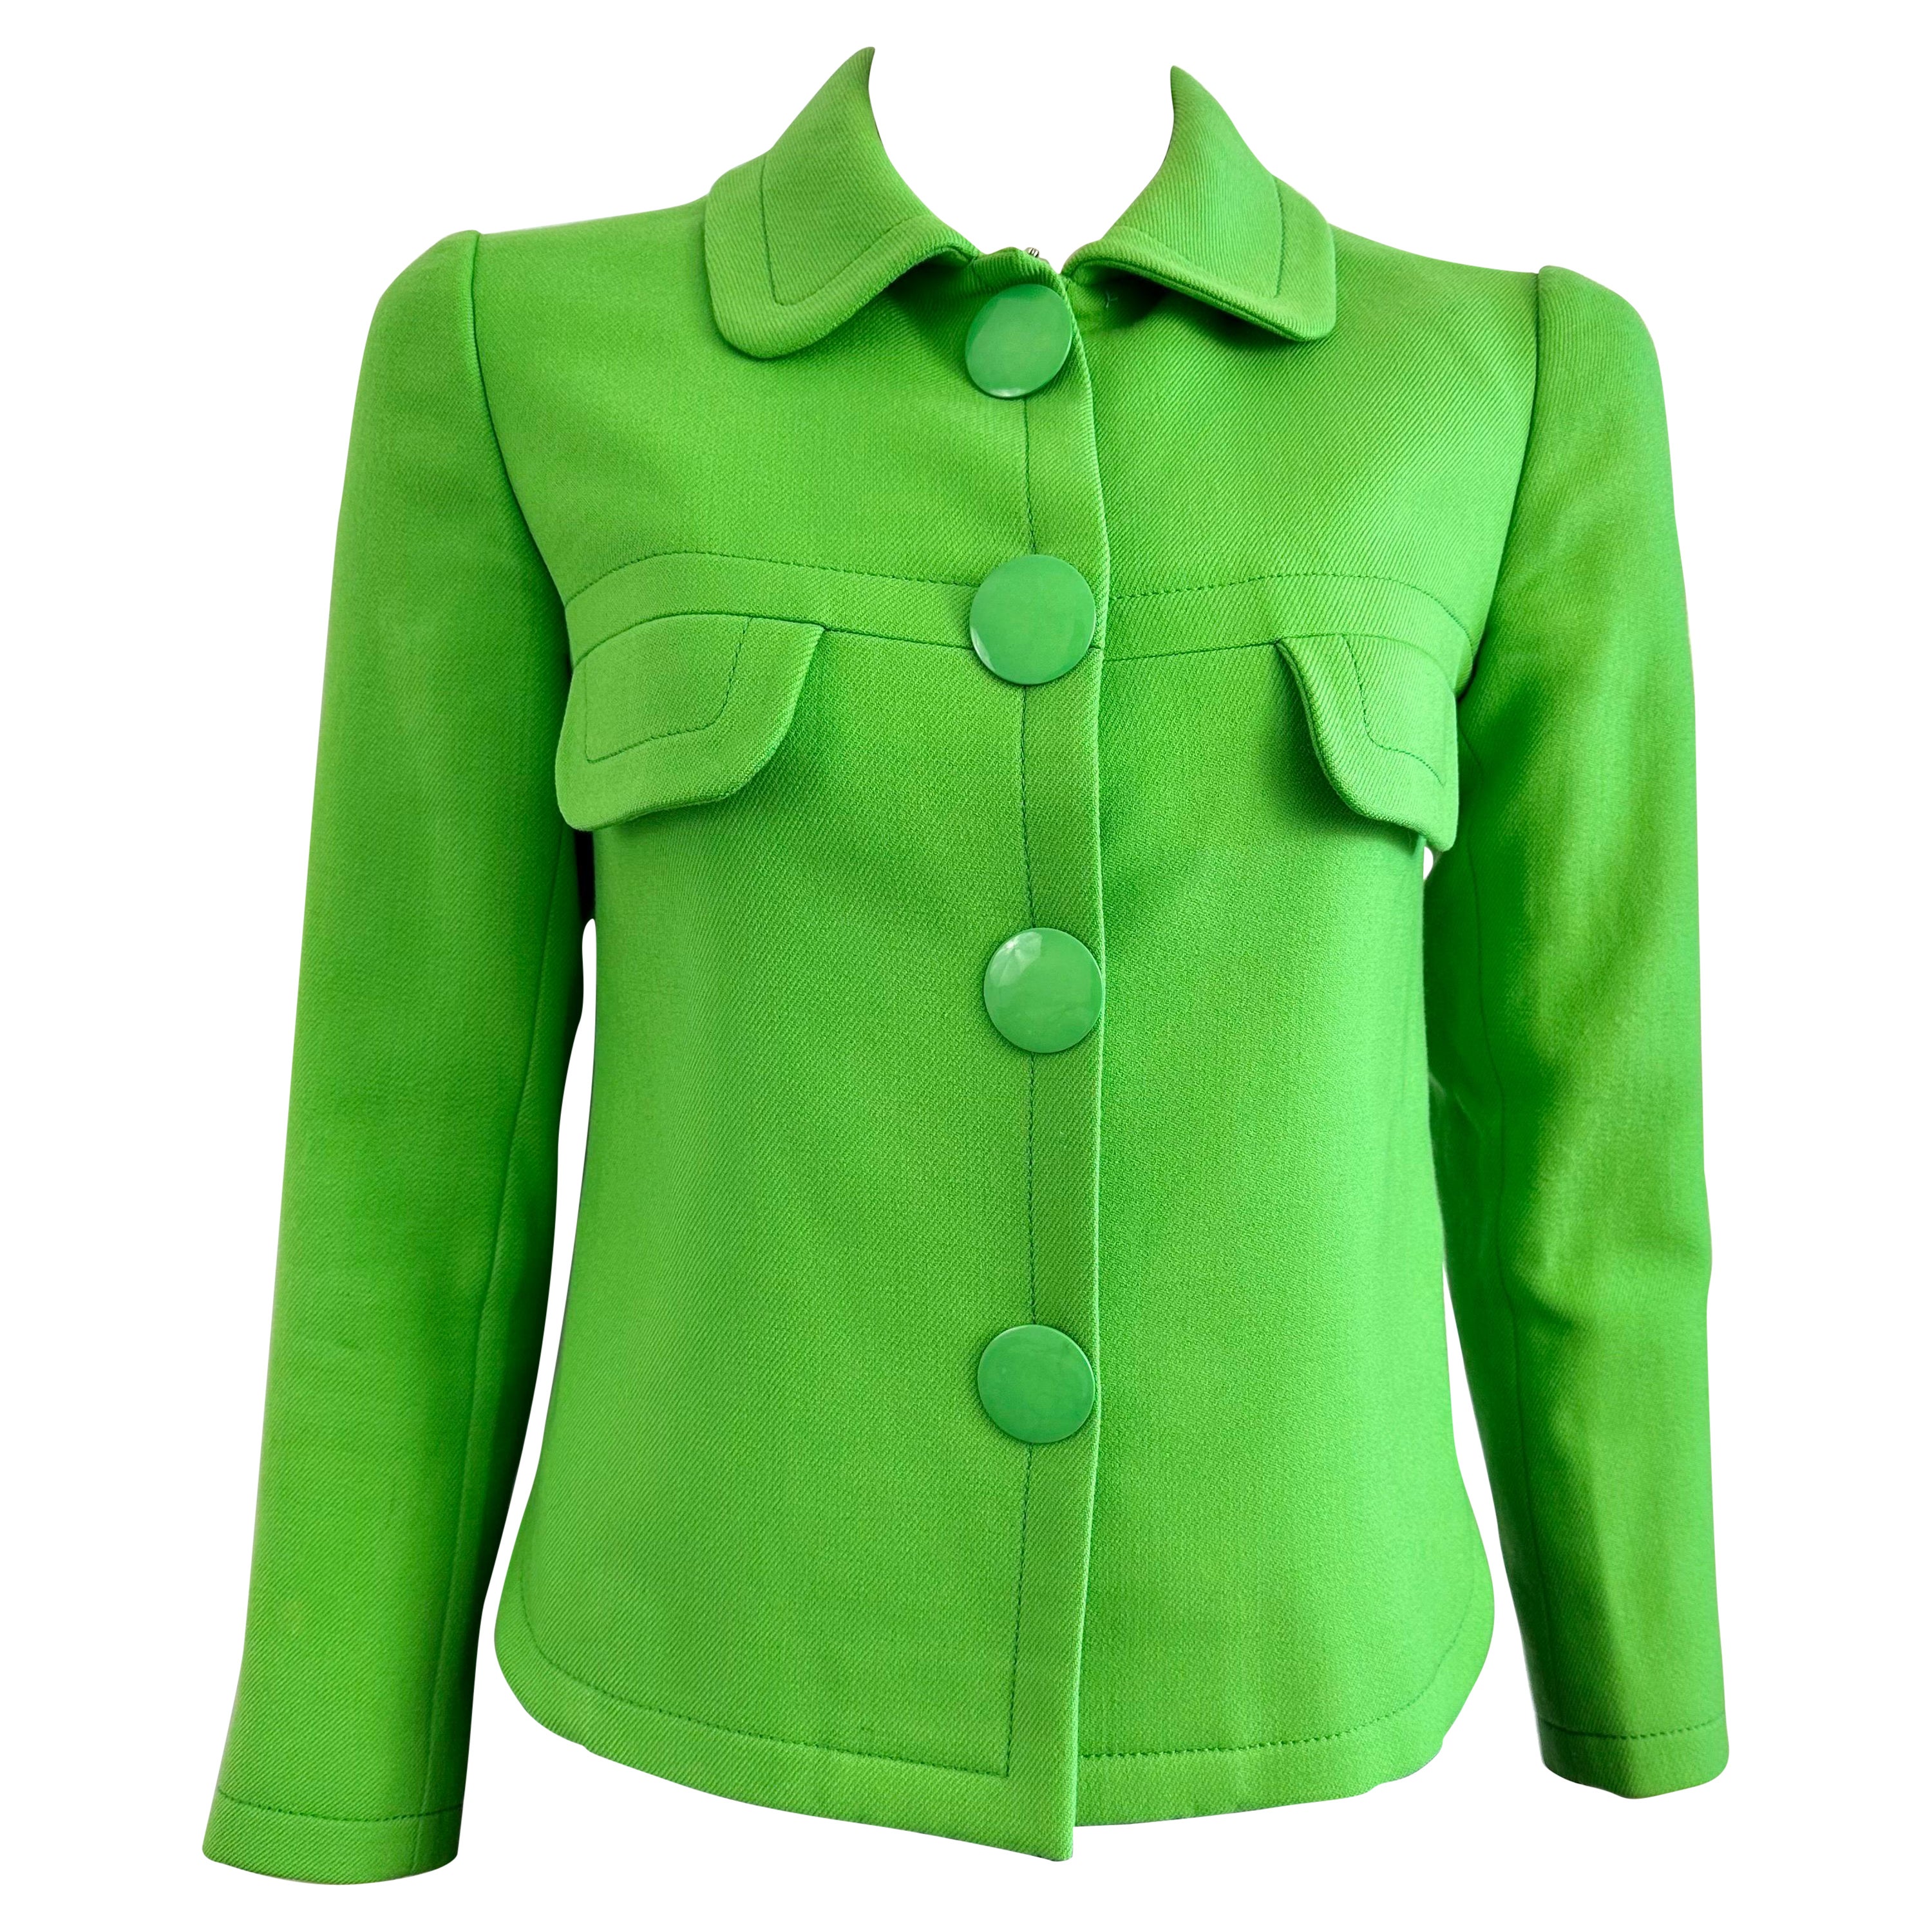 Pierre Cardin Promotion 1970s green wool jacket For Sale